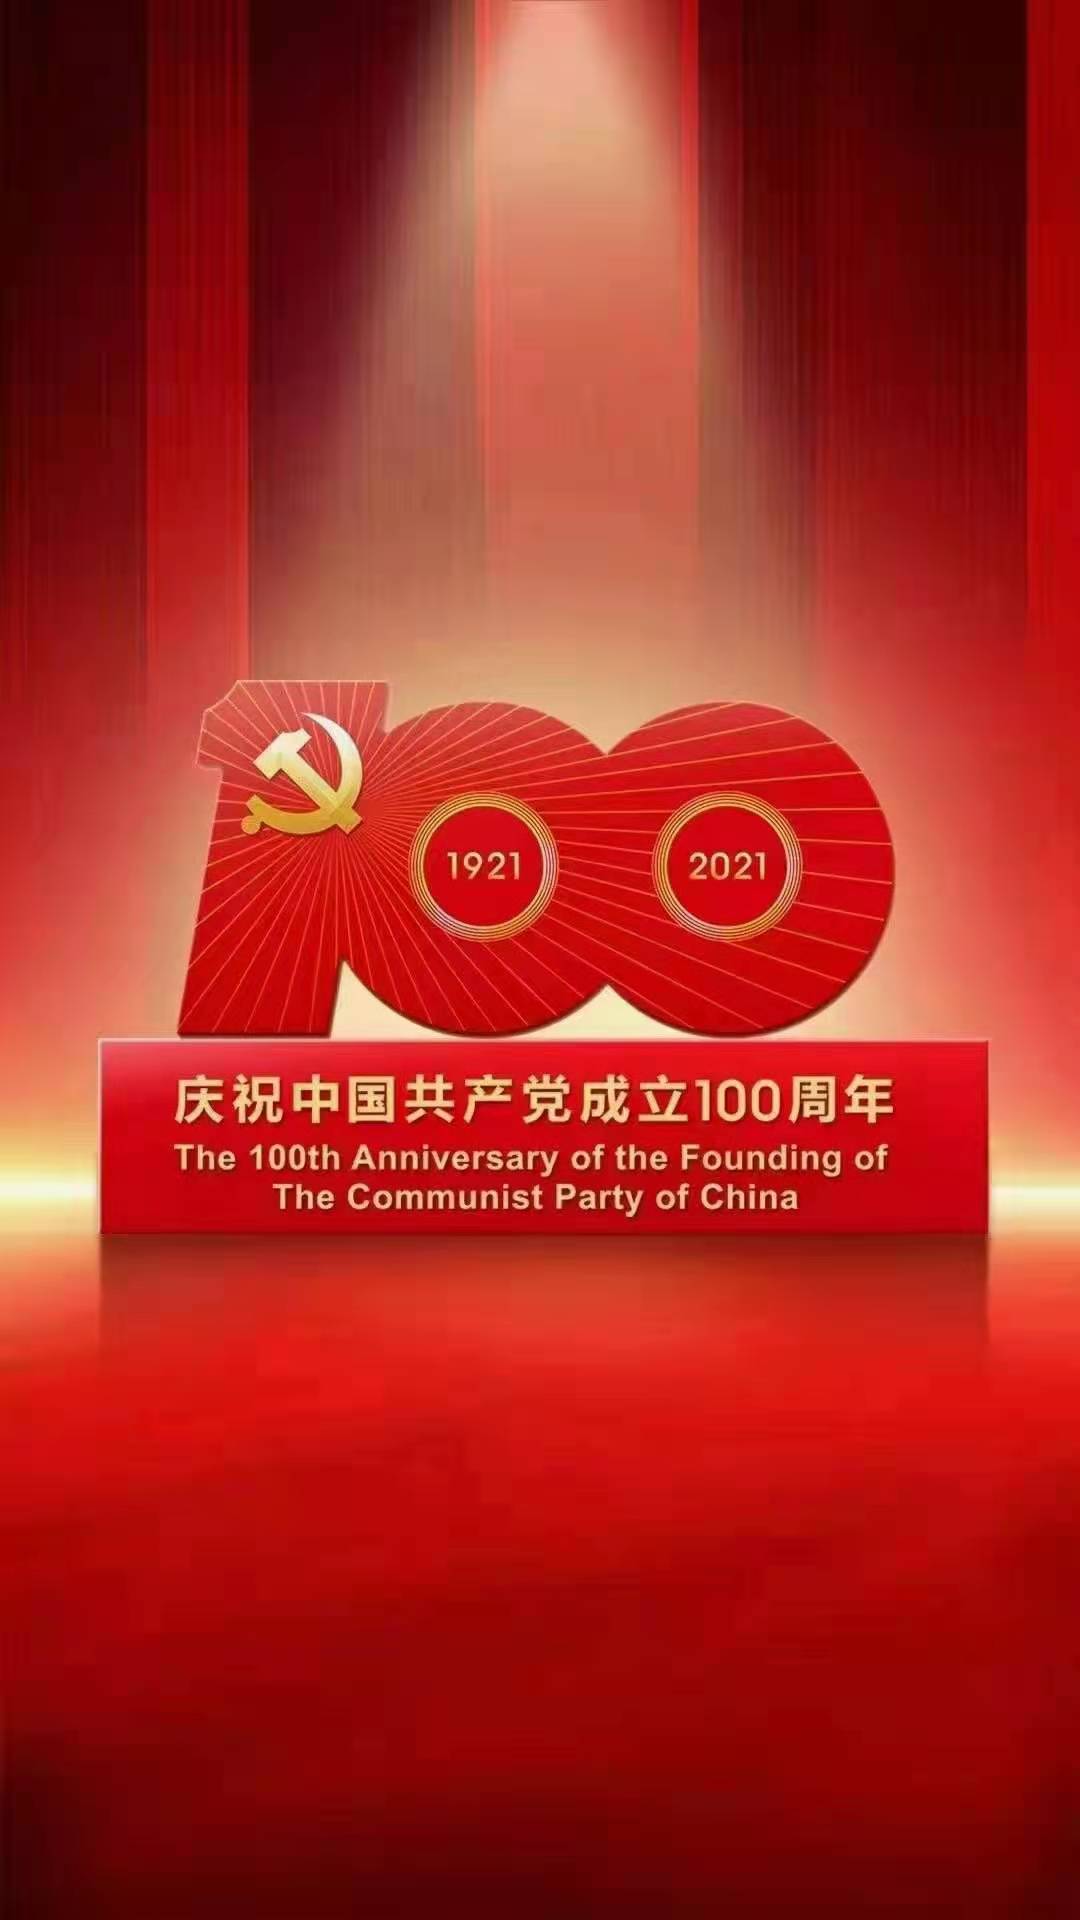 CPC ची 100 वर्षे साजरी करत आहे